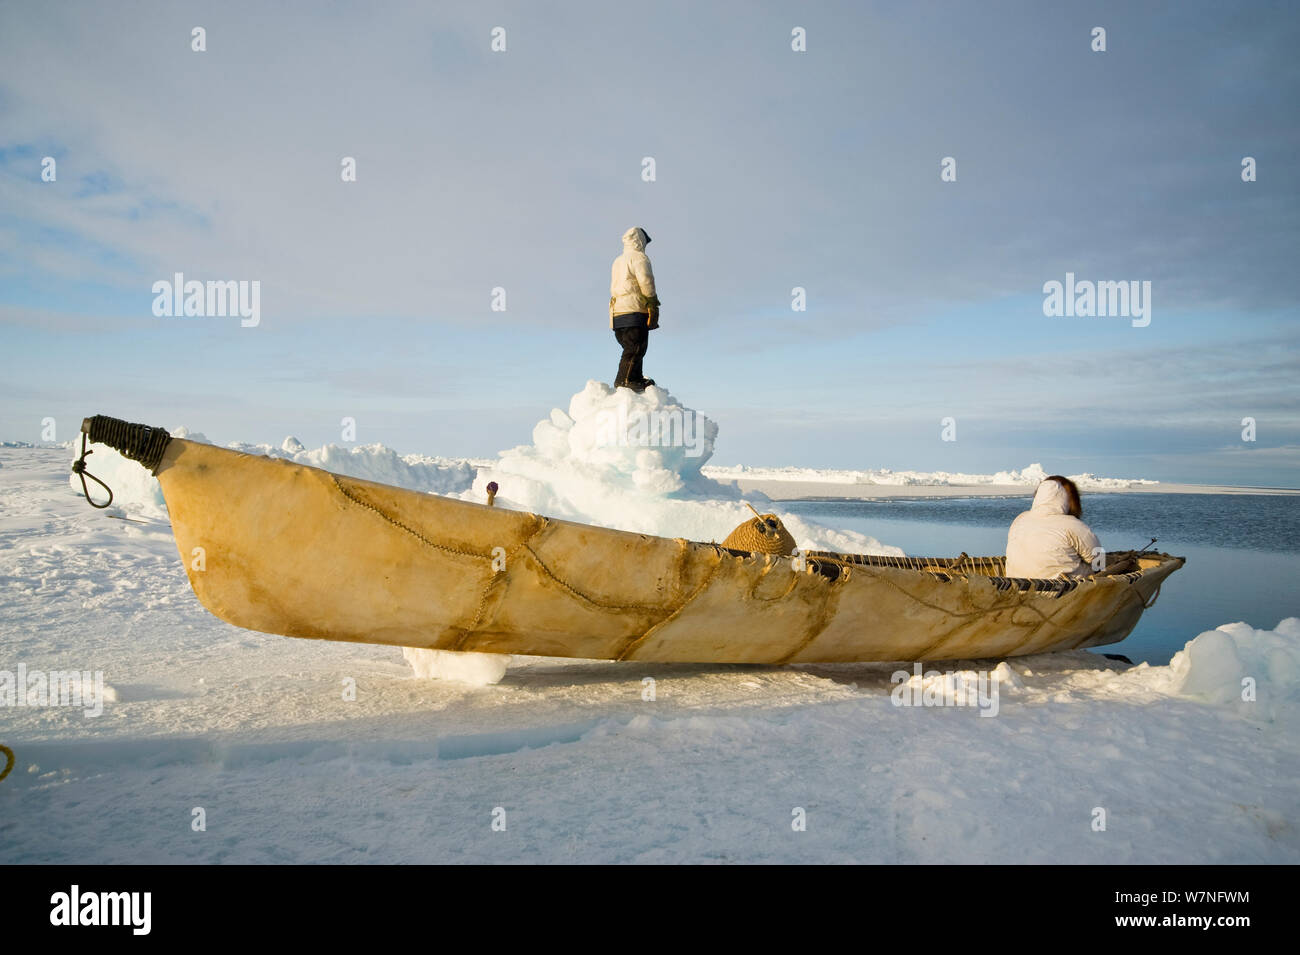 De subsistance avec les baleiniers Inupiaq l'oumiak - un bateau en peau de phoque barbu - attendre au bord d'une coupure dans la banquise et chercher des baleines. Mer de Tchoukotka, au large de Barrow, côte de l'Arctique de l'Alaska, avril 2012. Banque D'Images